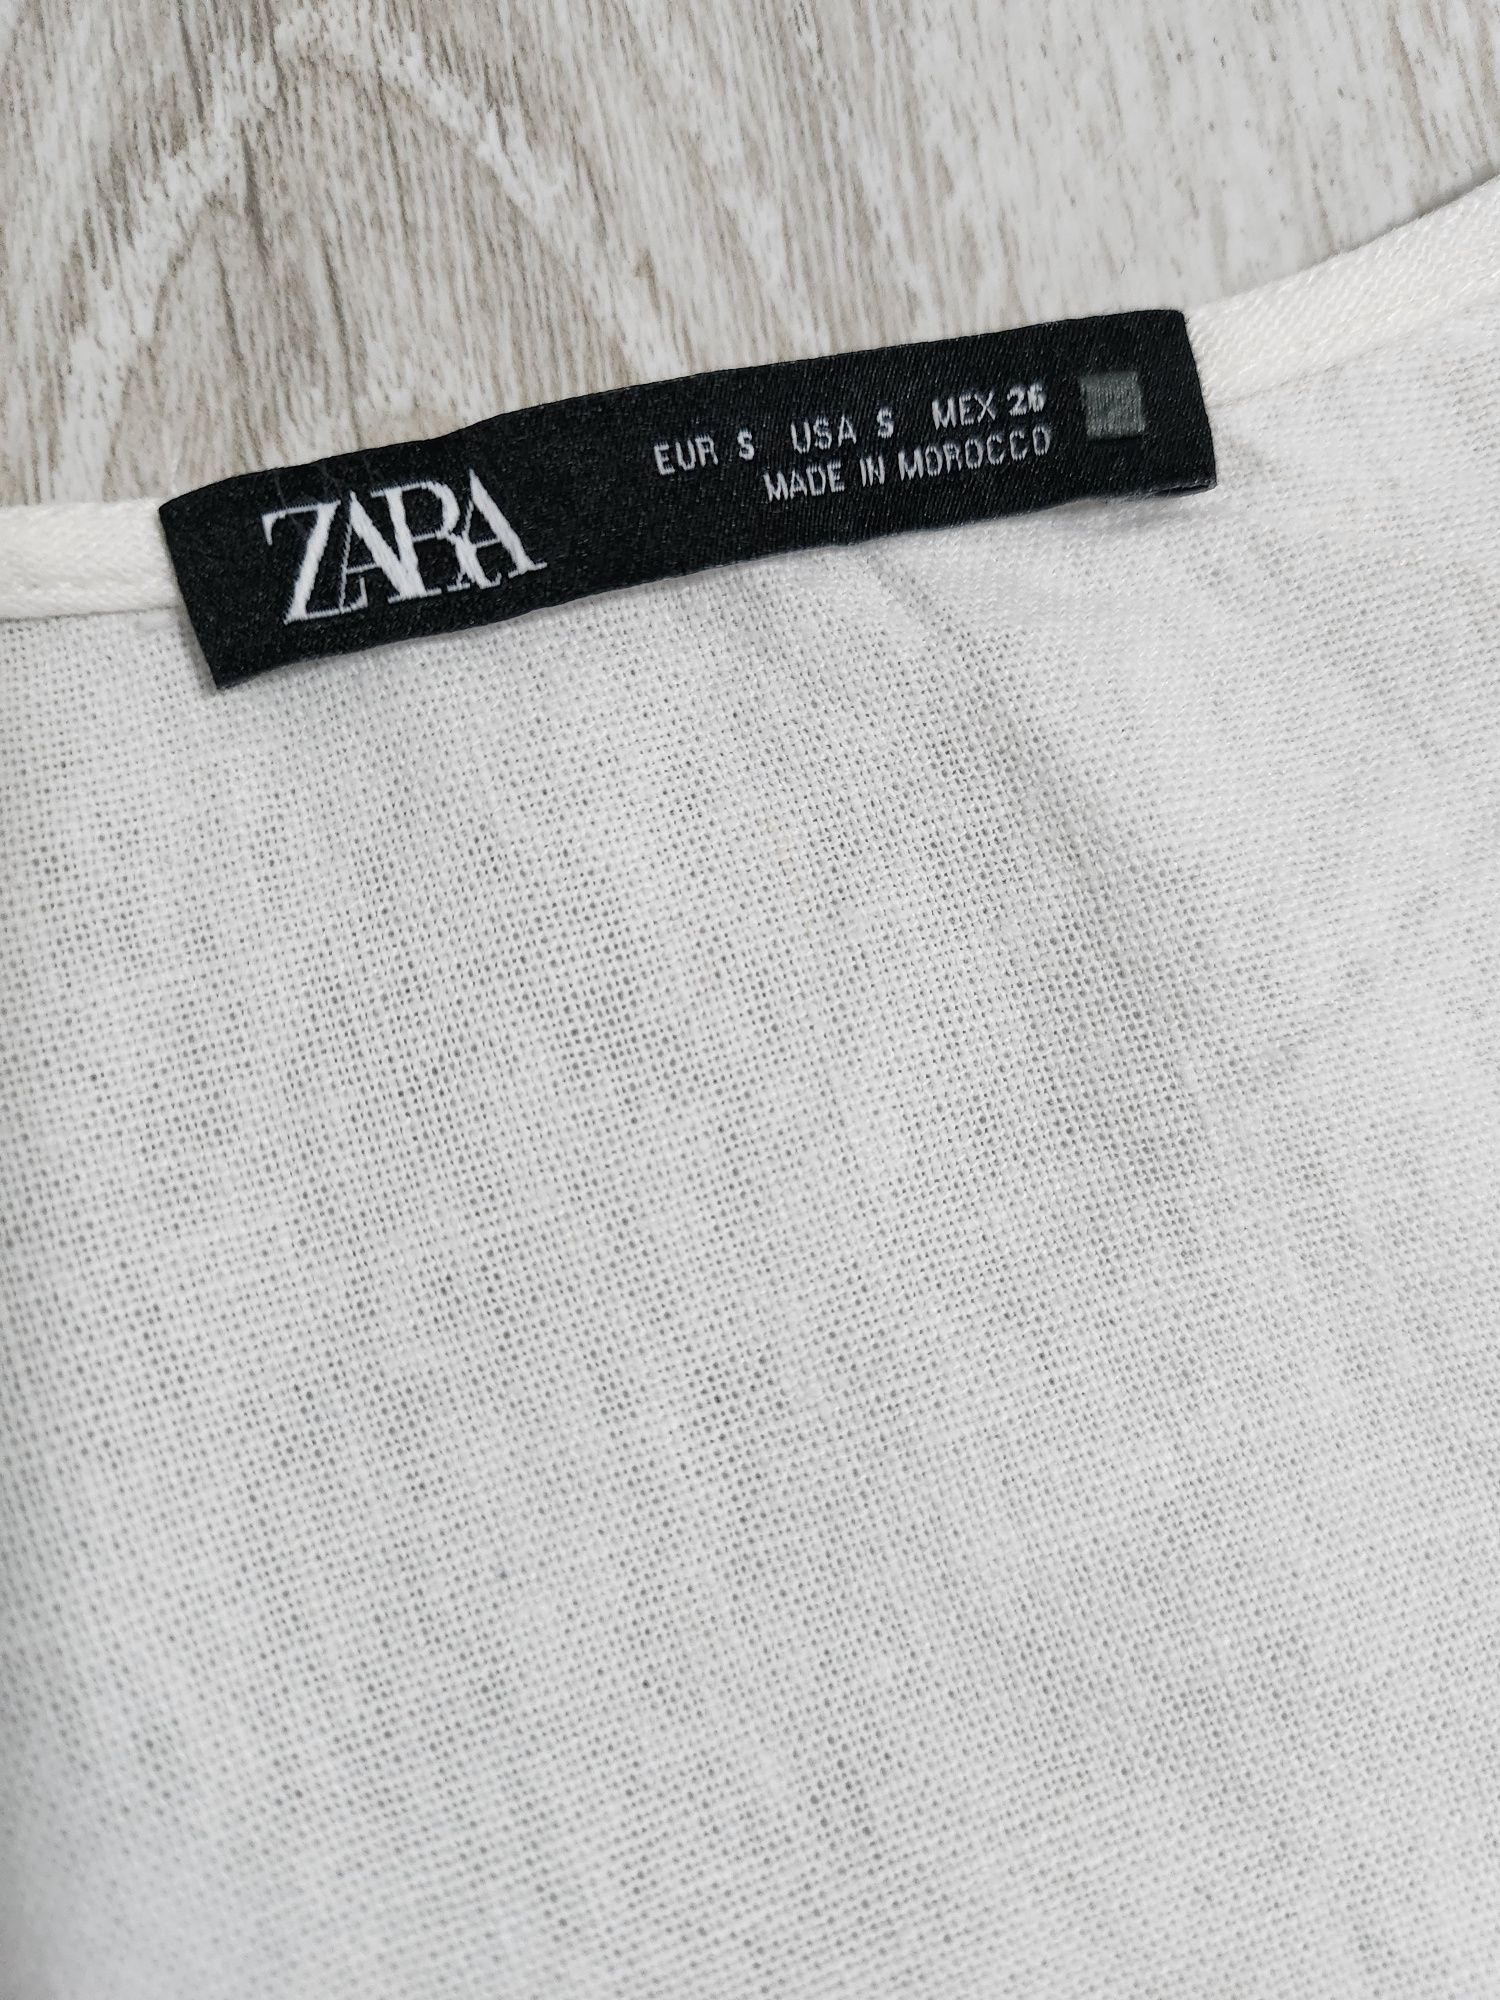 Белое короткое платье Zara лён